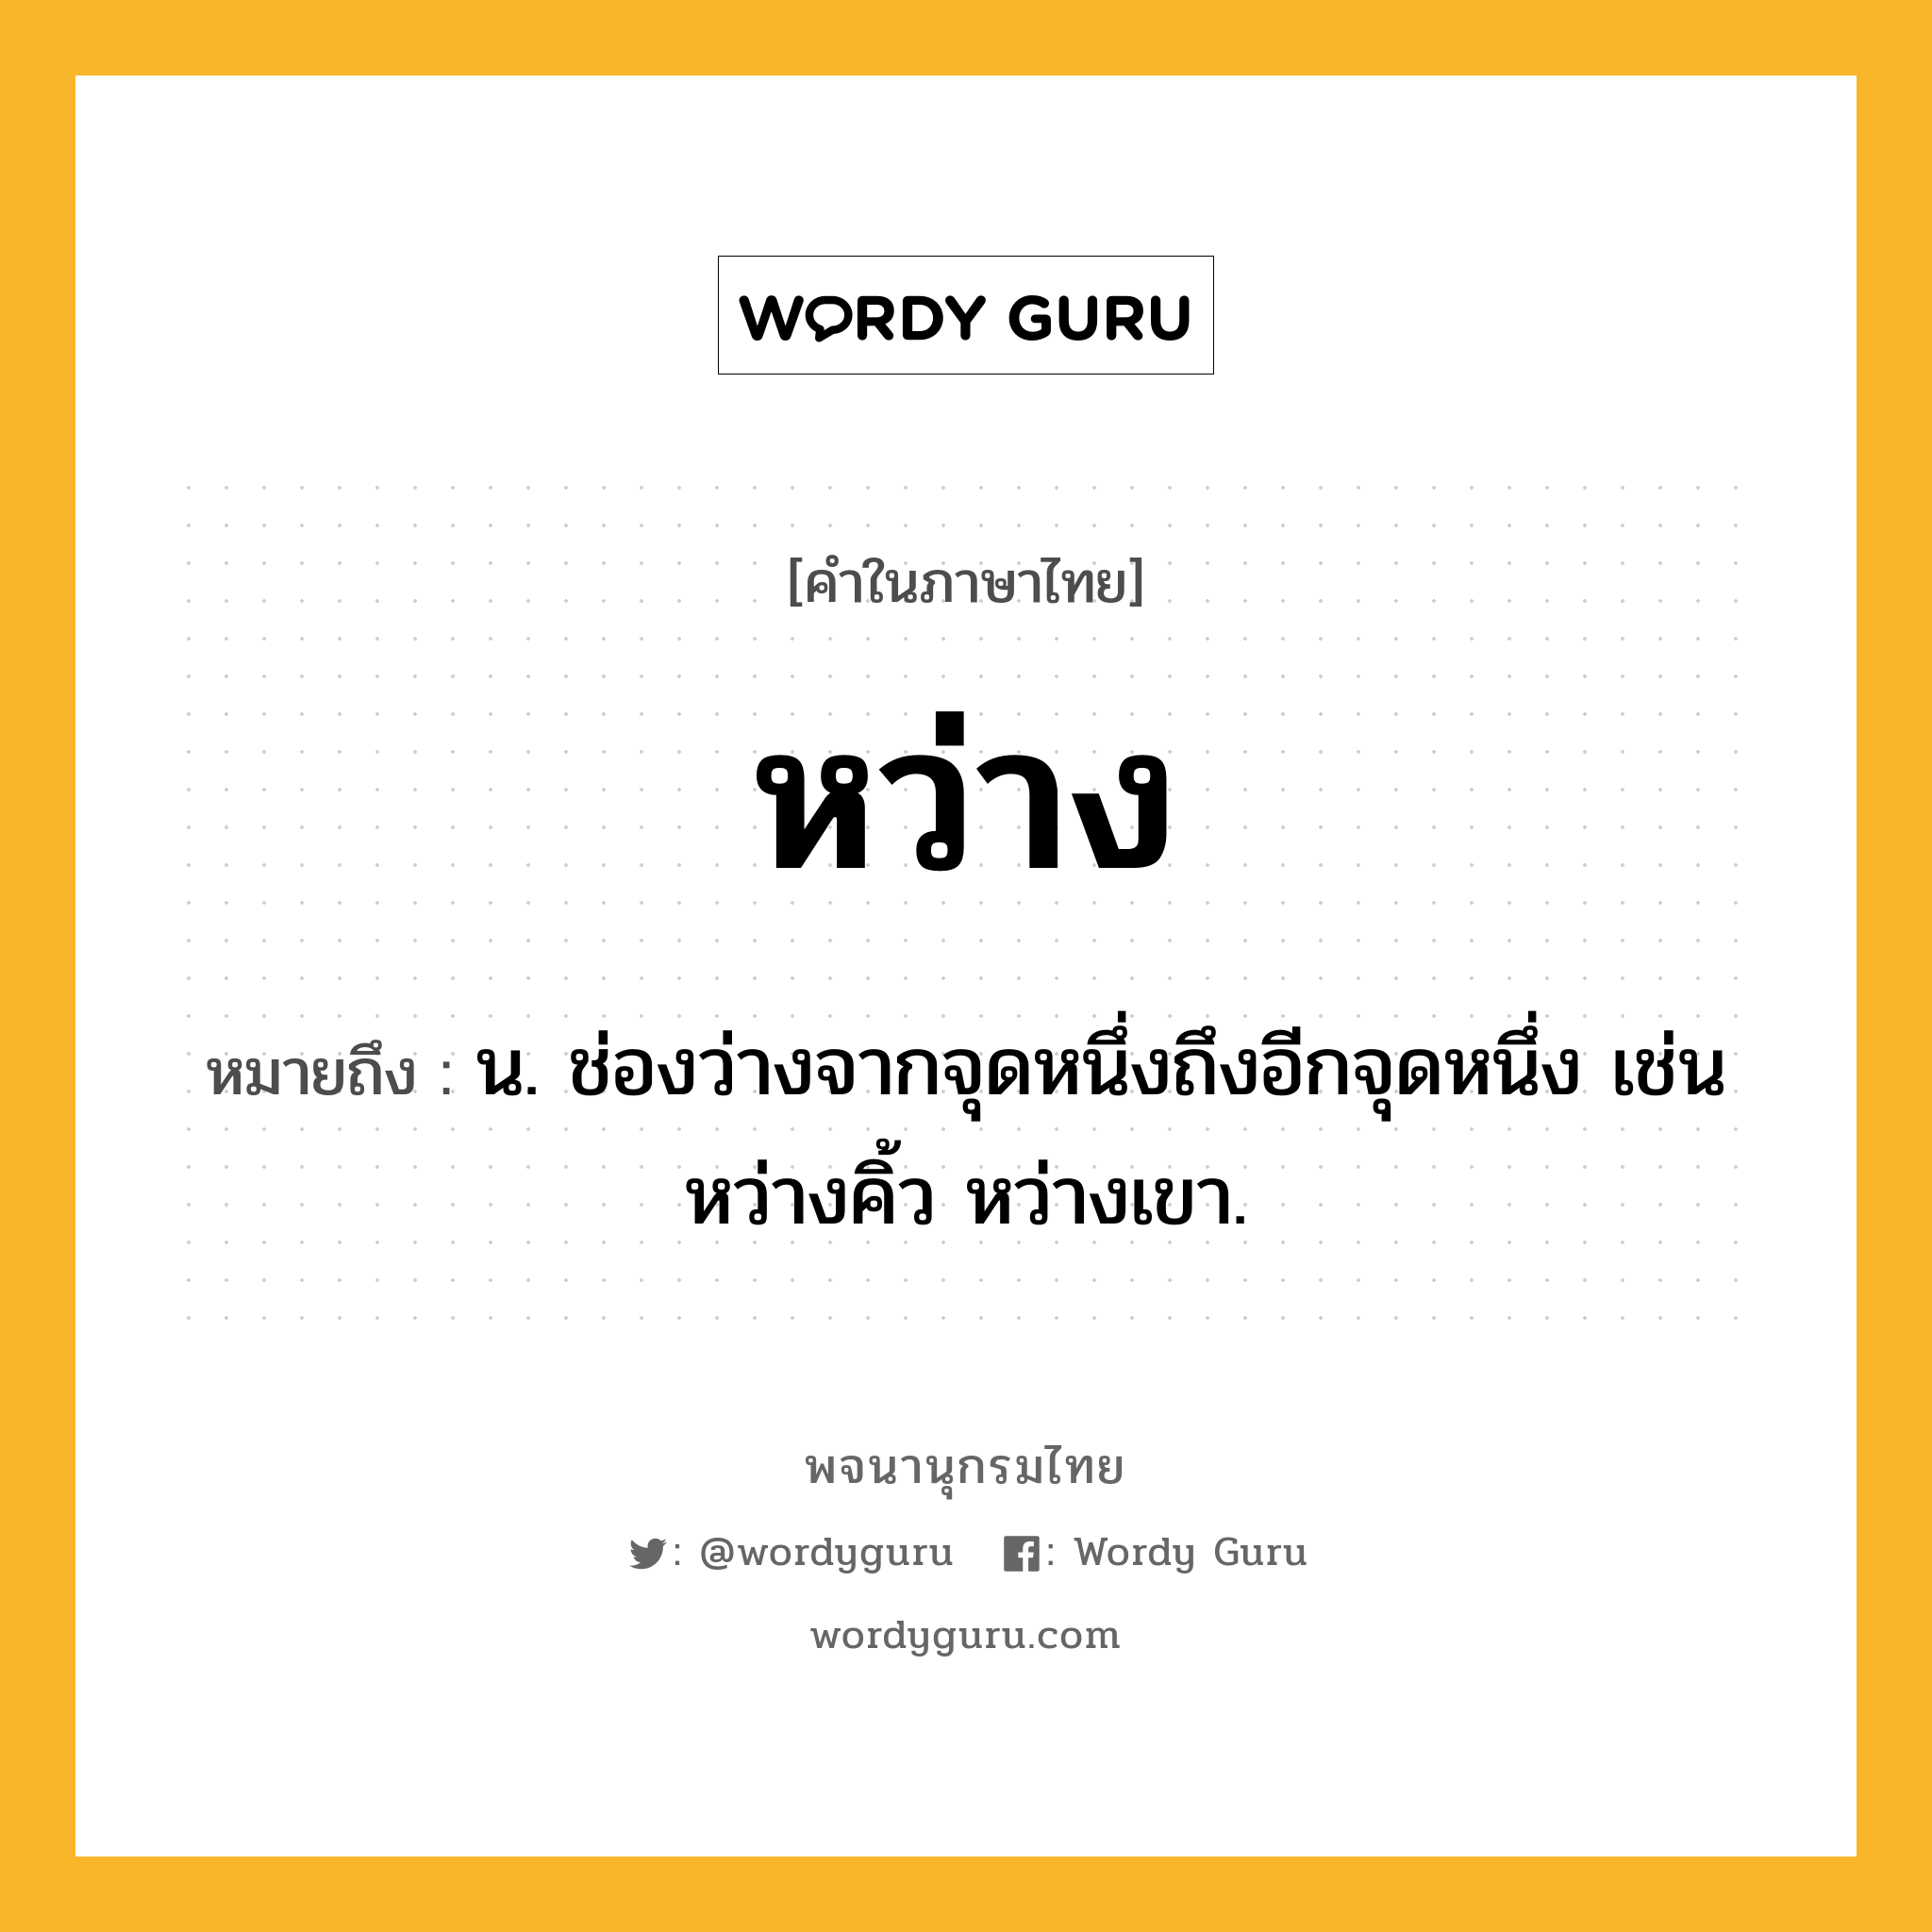 หว่าง หมายถึงอะไร?, คำในภาษาไทย หว่าง หมายถึง น. ช่องว่างจากจุดหนึ่งถึงอีกจุดหนึ่ง เช่น หว่างคิ้ว หว่างเขา.